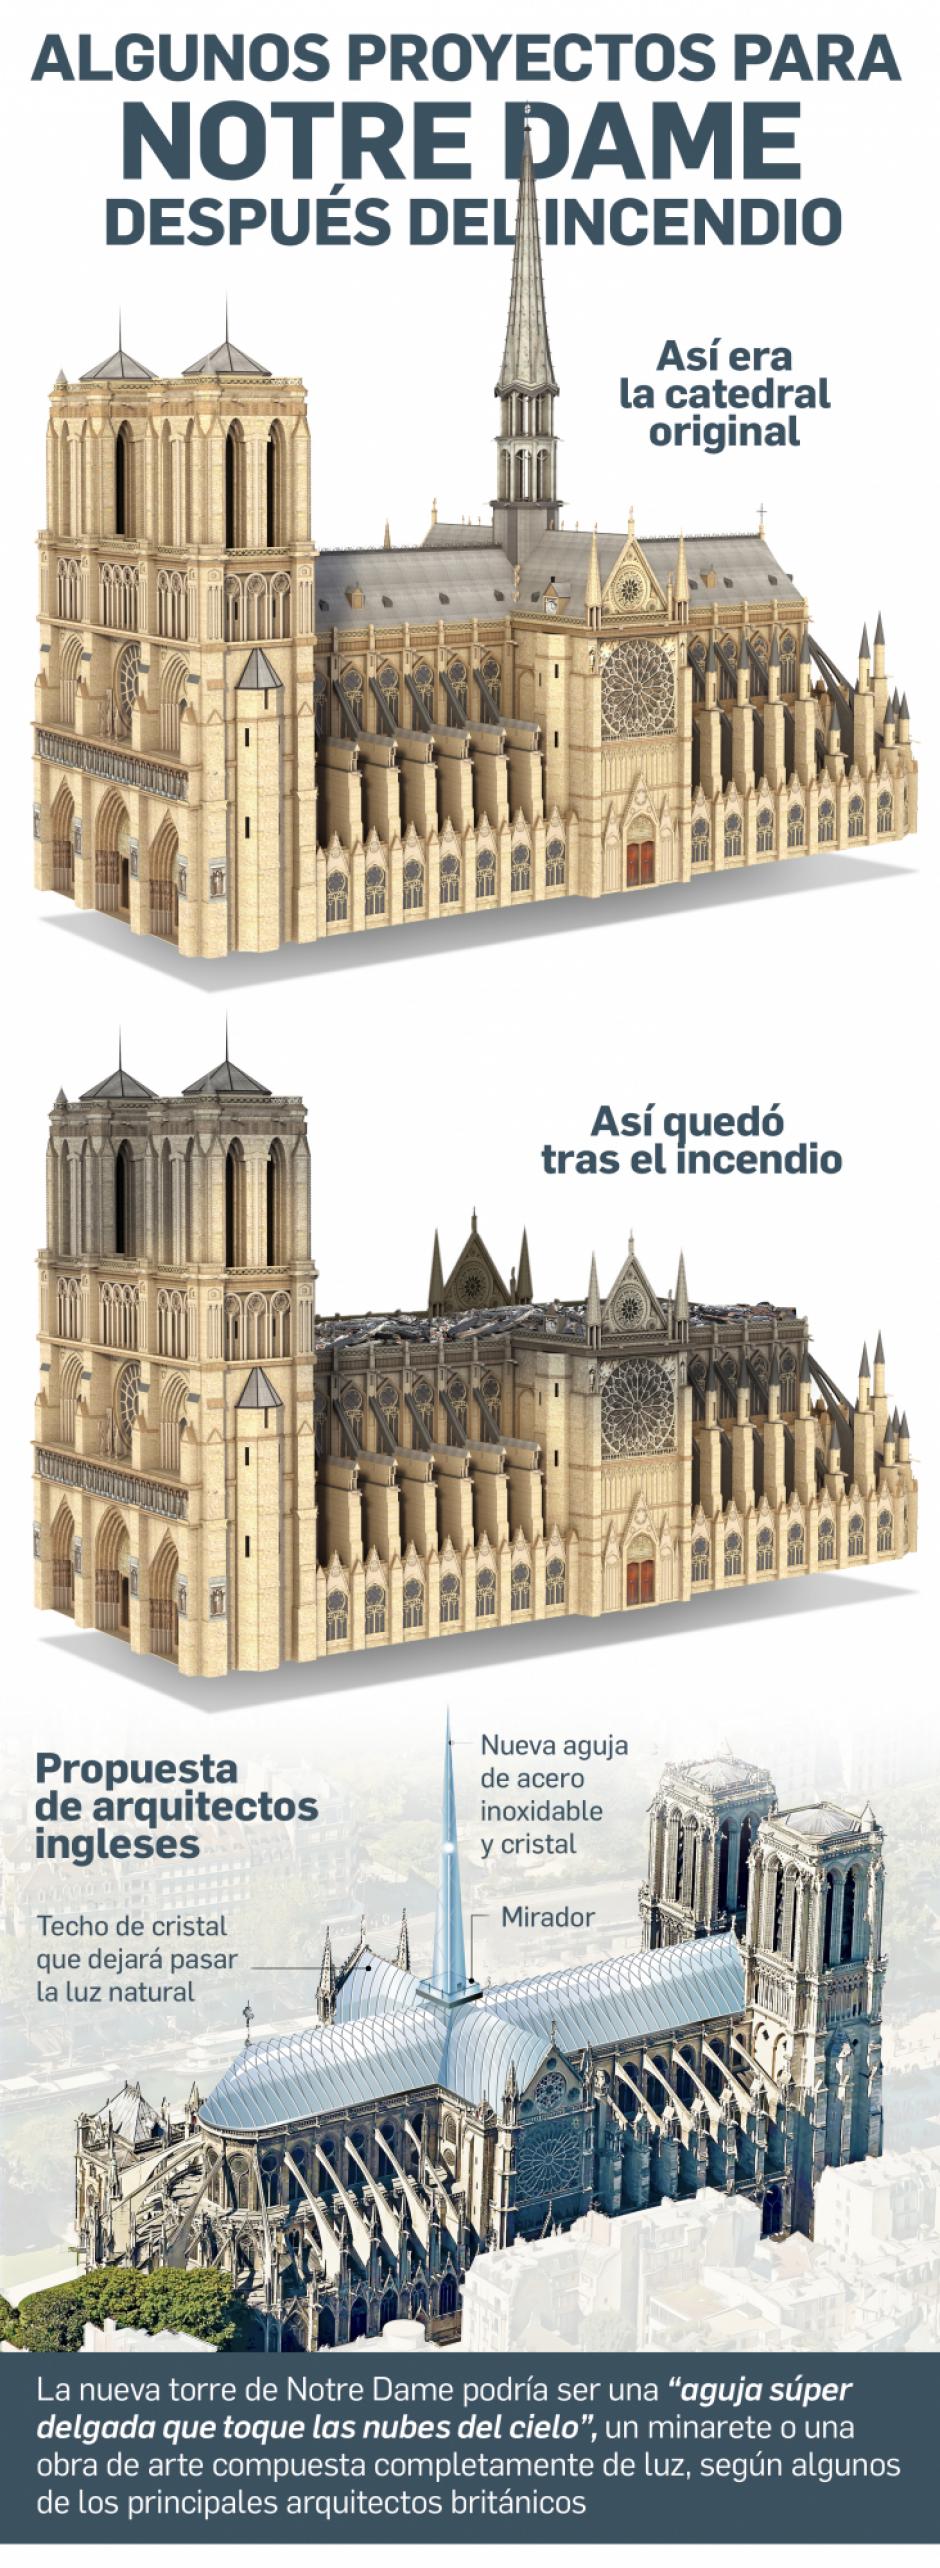 La restauración de Notre Dame, un proyecto aún lejano entre la tradición y  el rupturismo